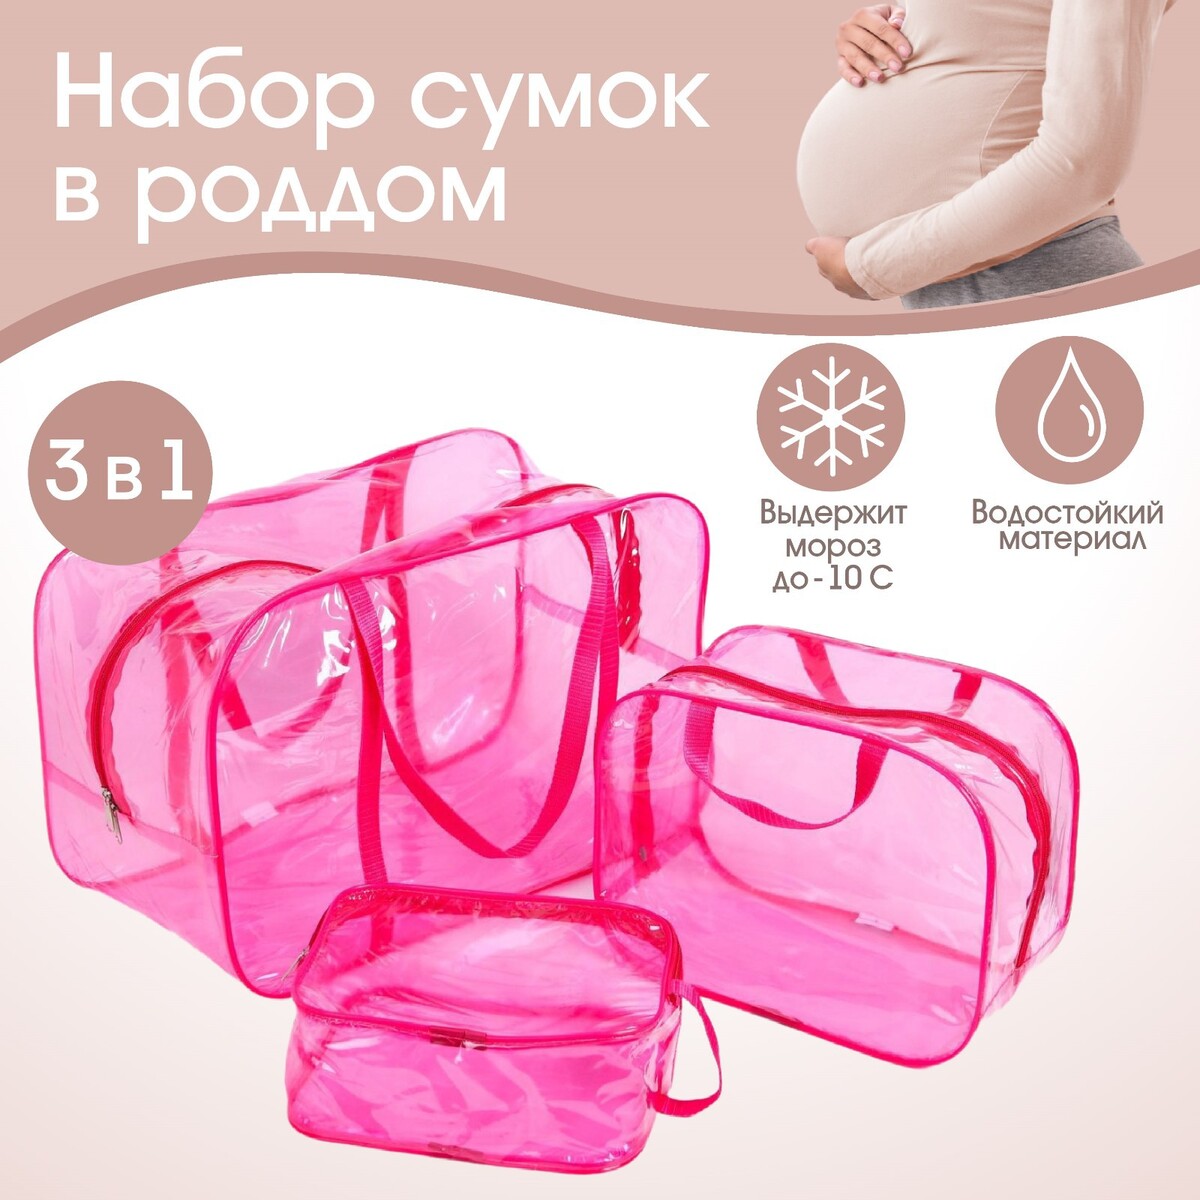 фото Набор сумок в роддом, 3 шт., цветной пвх, цвет розовый mum&baby